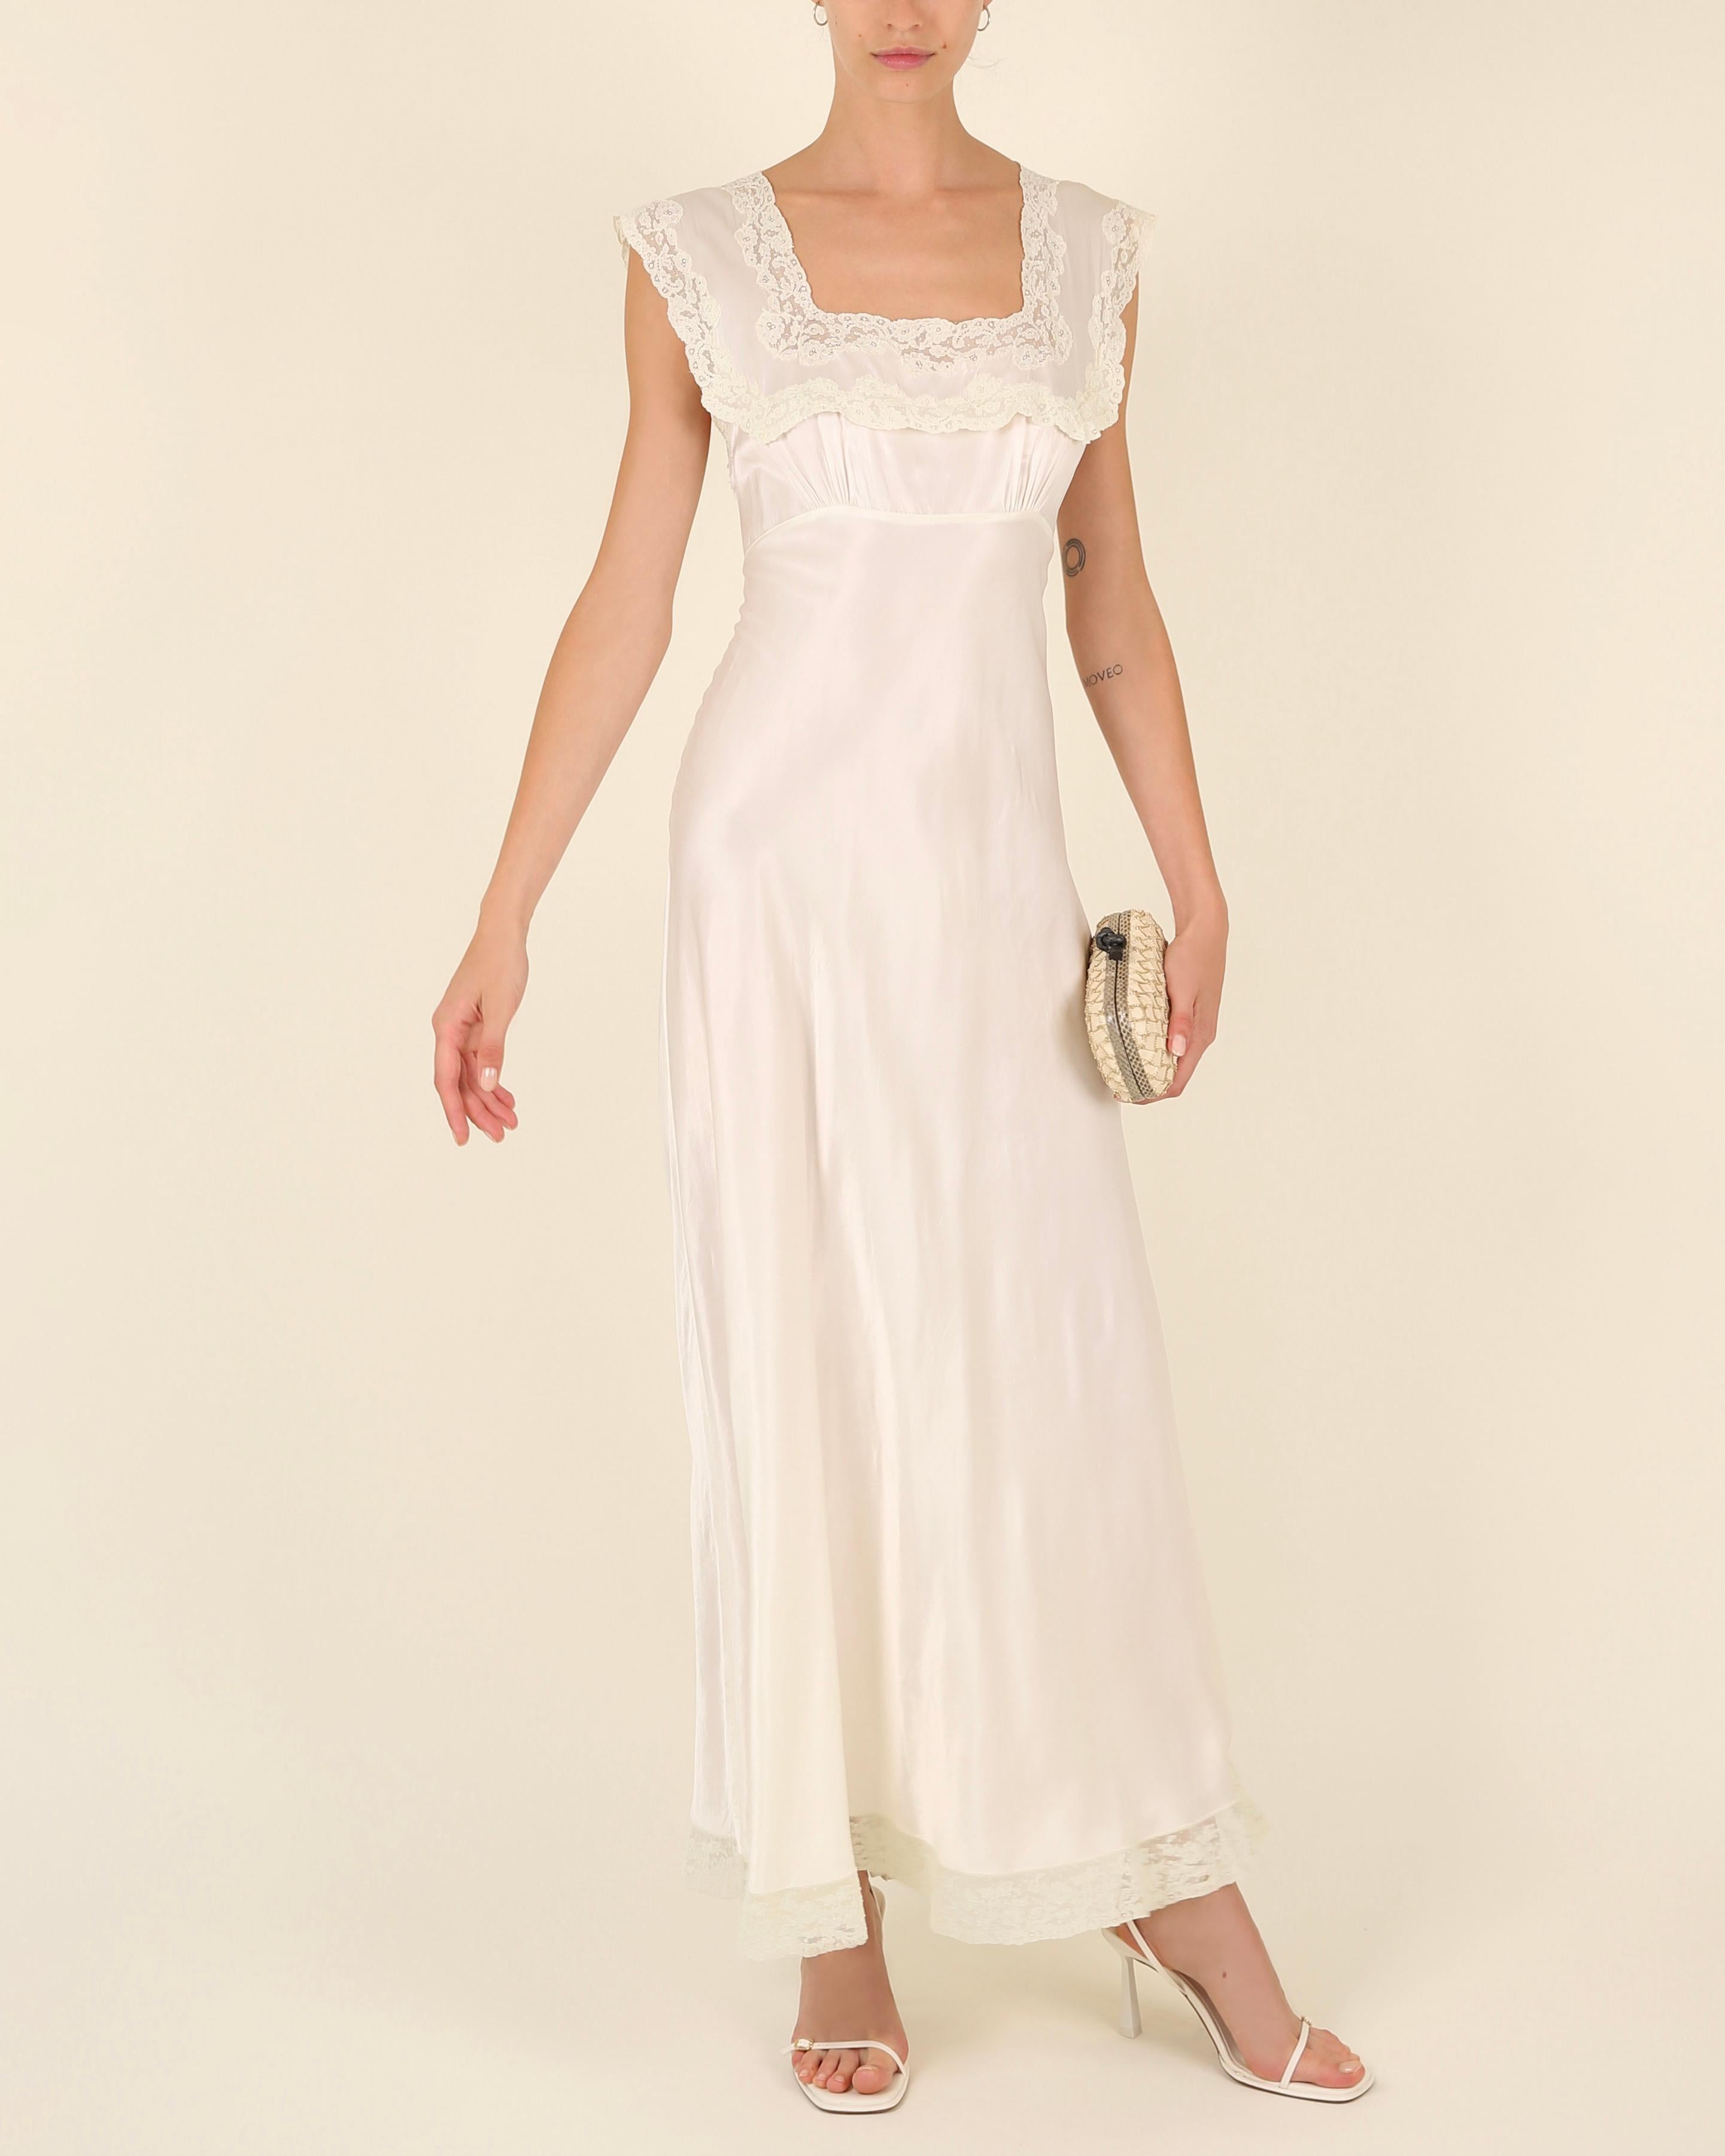 Heavenly Fischer vintage 40s silk white ivory lace wedding night gown slip dress 2